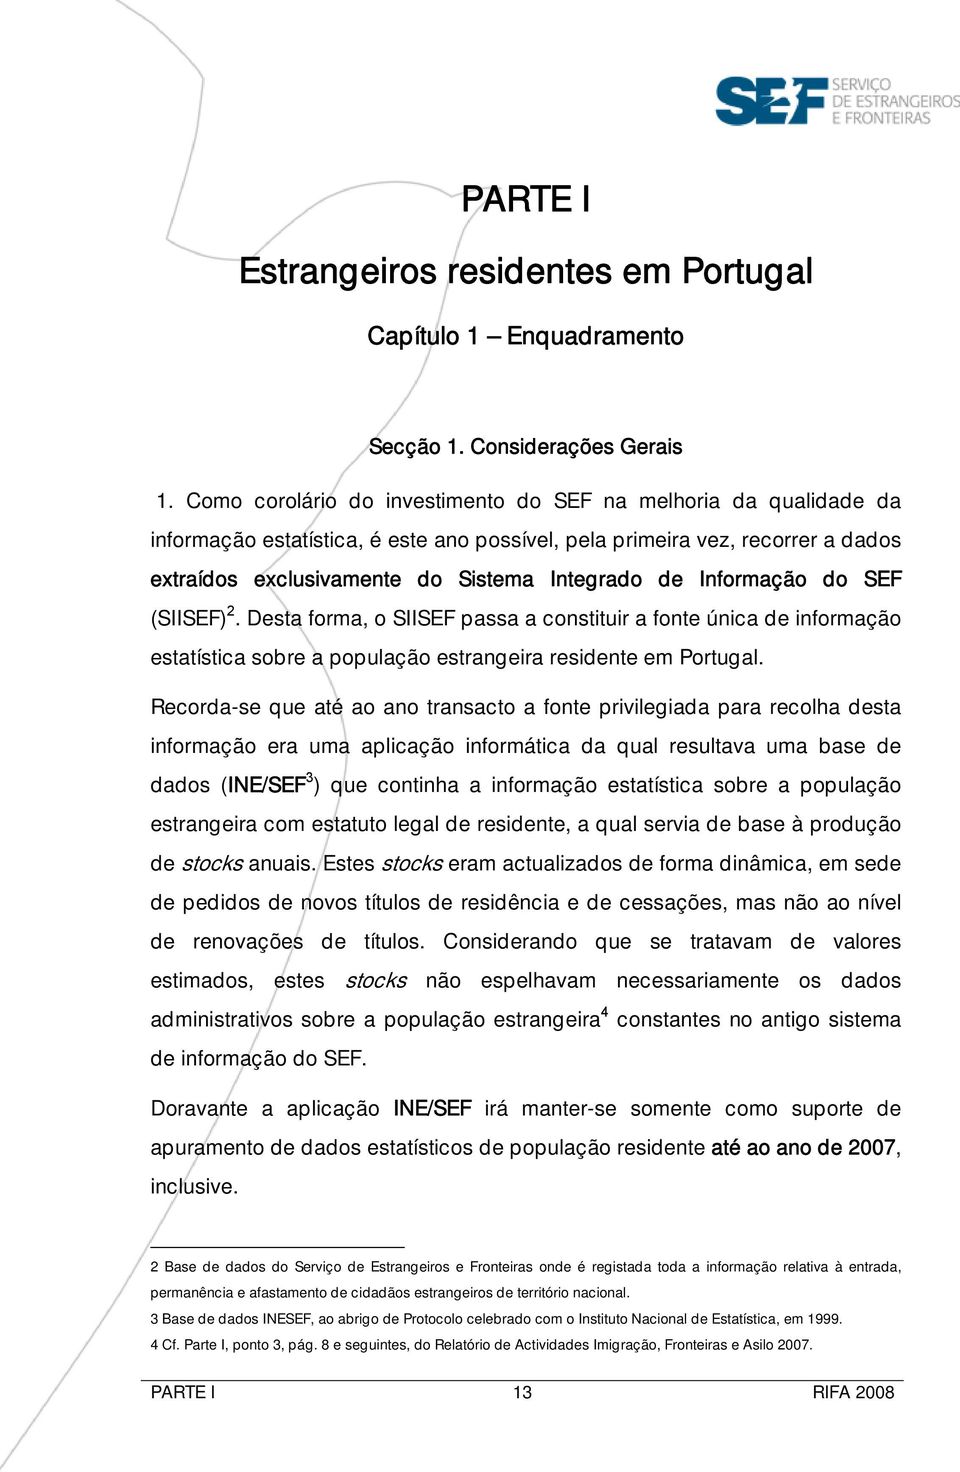 Informação do SEF (SIISEF) 2. Desta forma, o SIISEF passa a constituir a fonte única de informação estatística sobre a população estrangeira residente em Portugal.